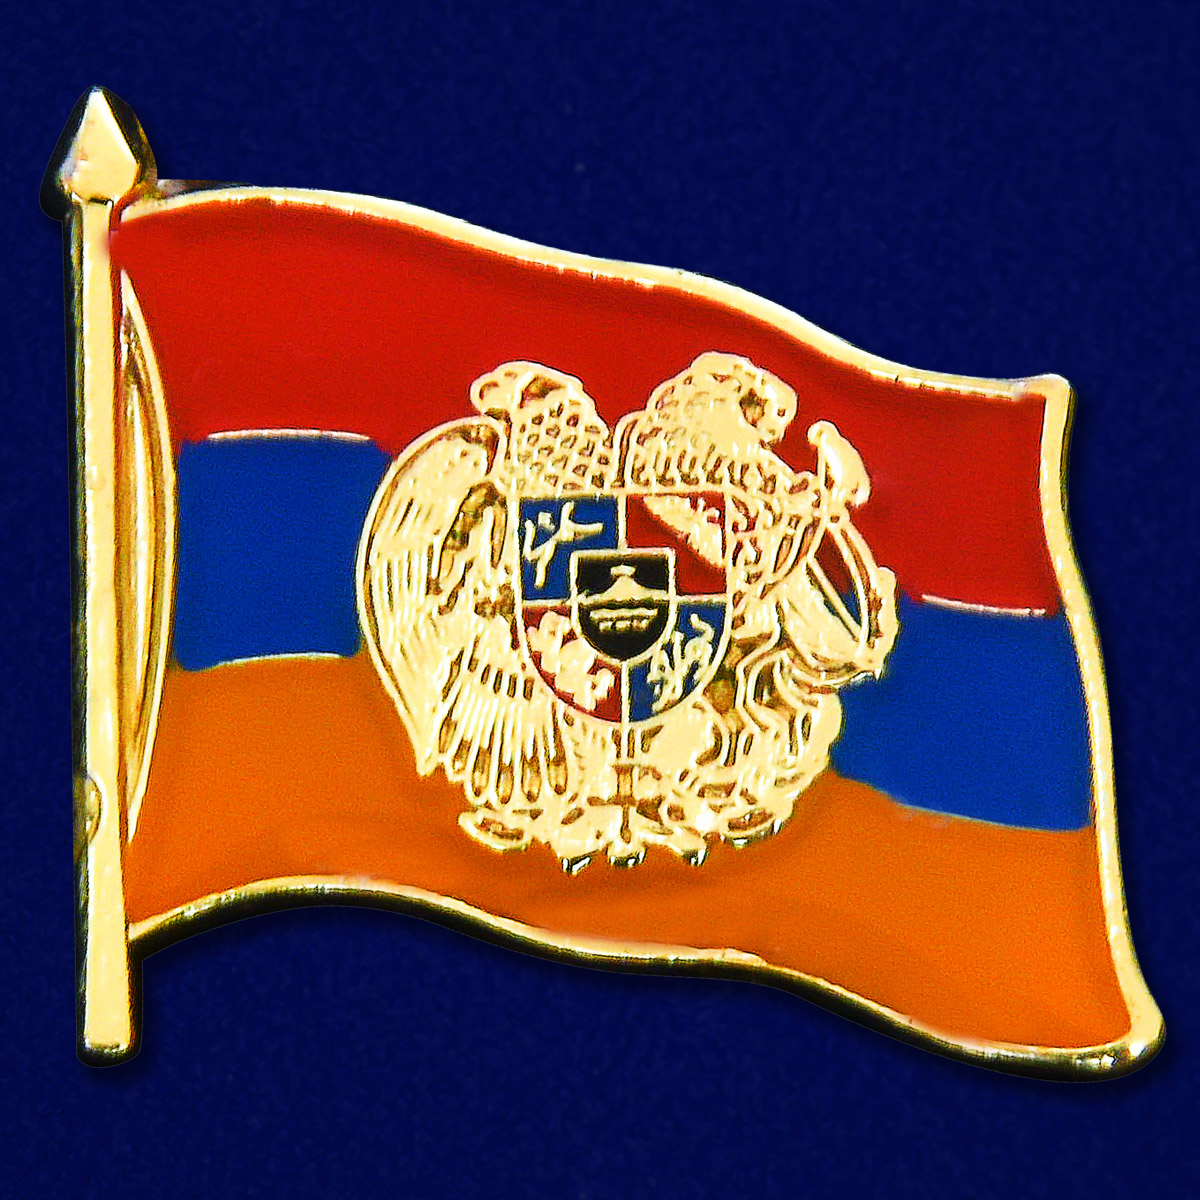 Заказать значок "Армянский флаг" можно с доставкой в любой город